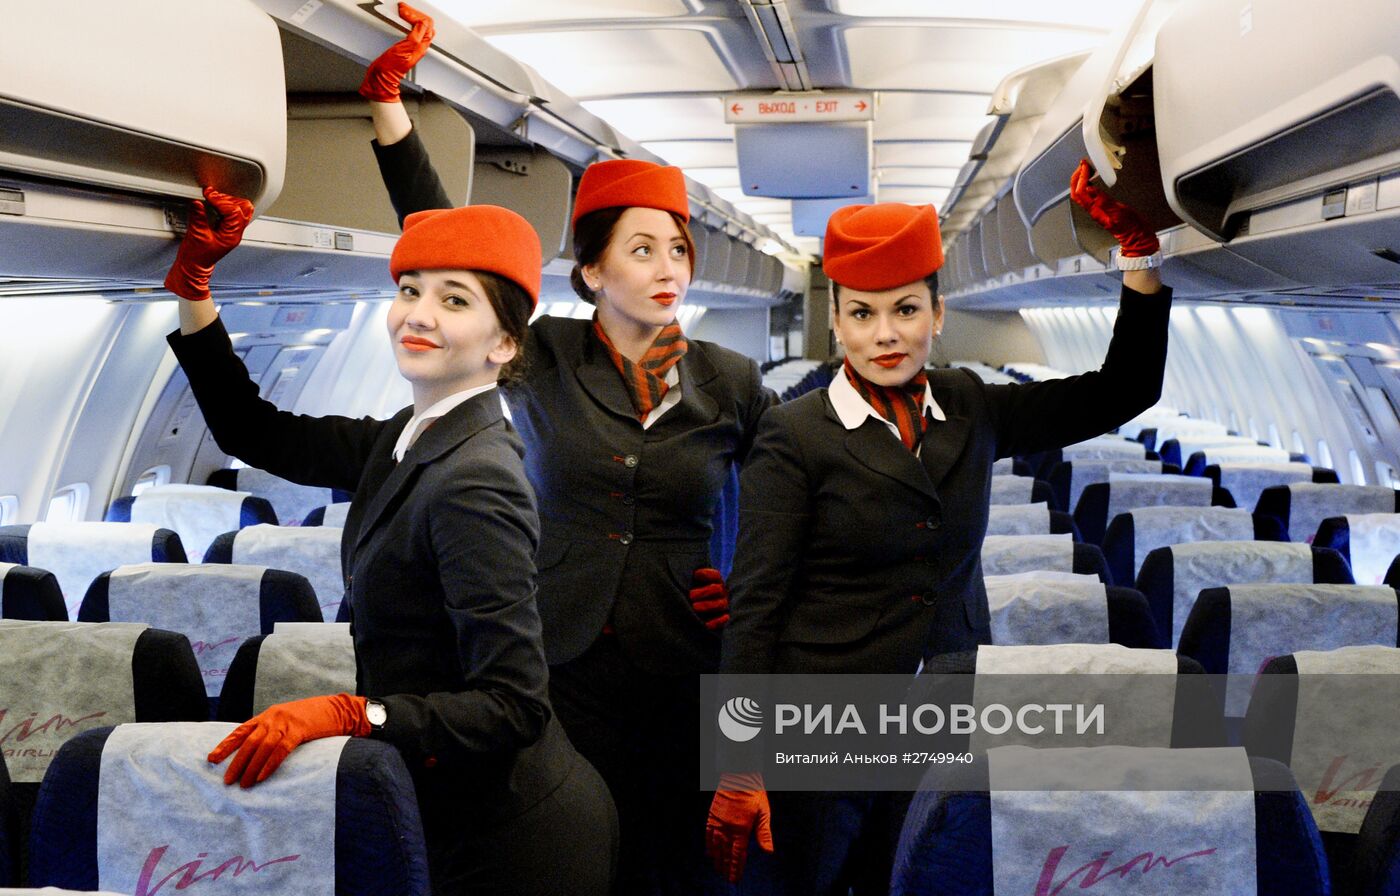 Первый рейс авиакомпании "Вим Авиа" по маршруту Владивосток - Москва